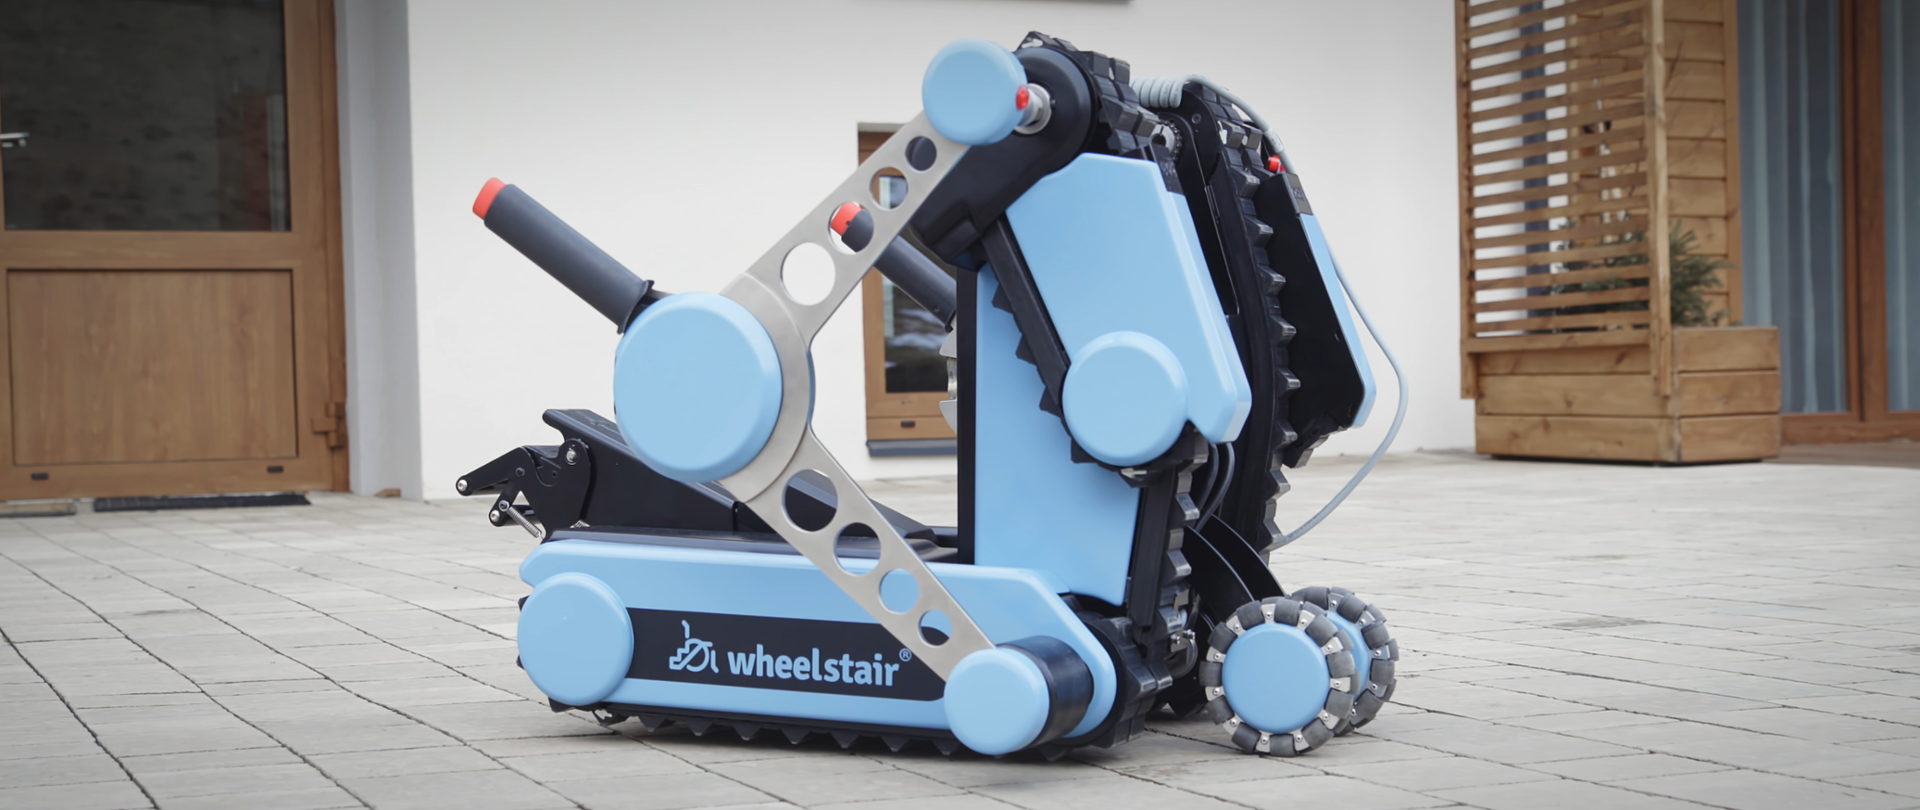 WheelStair robot